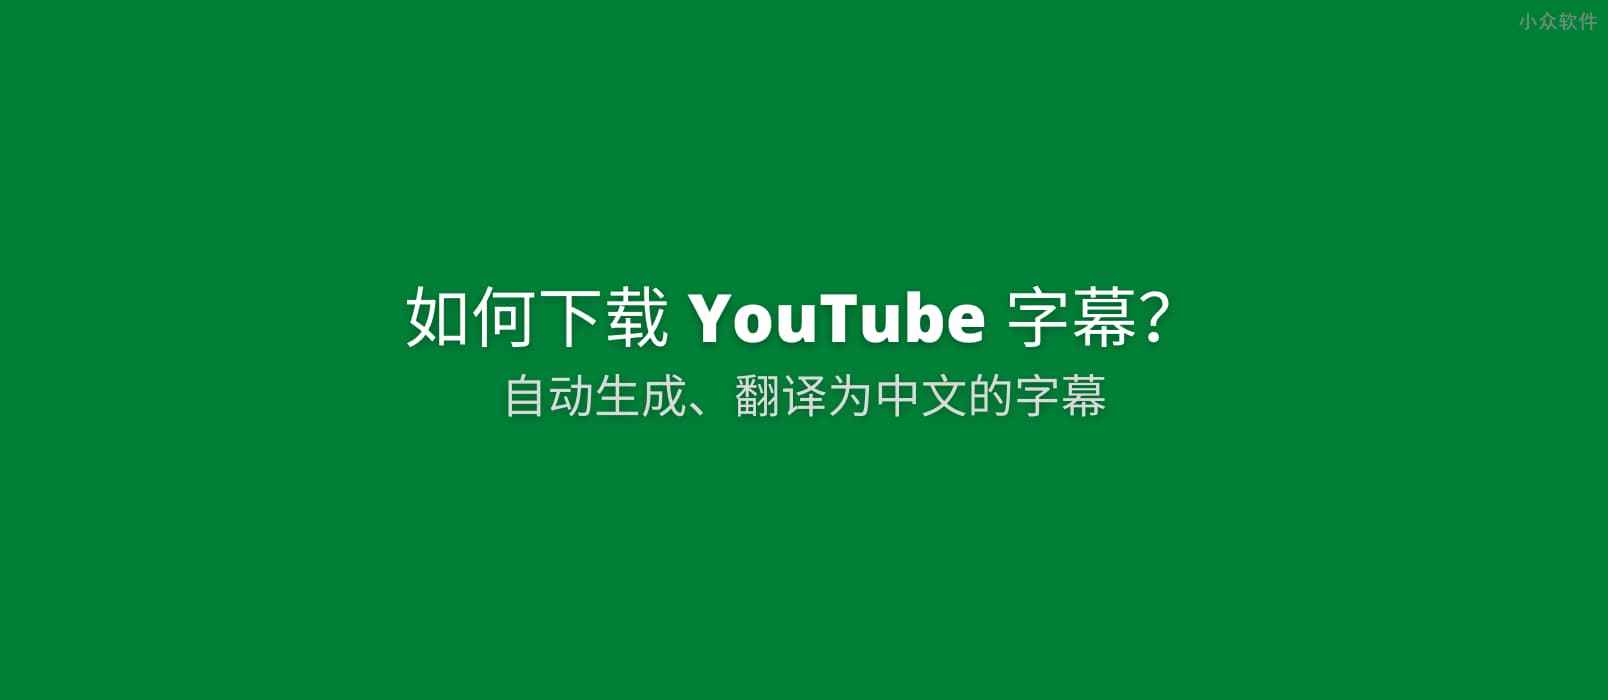 如何下载 YouTube 为视频自动生成并翻译为中文的字幕文件[Chrome] 1